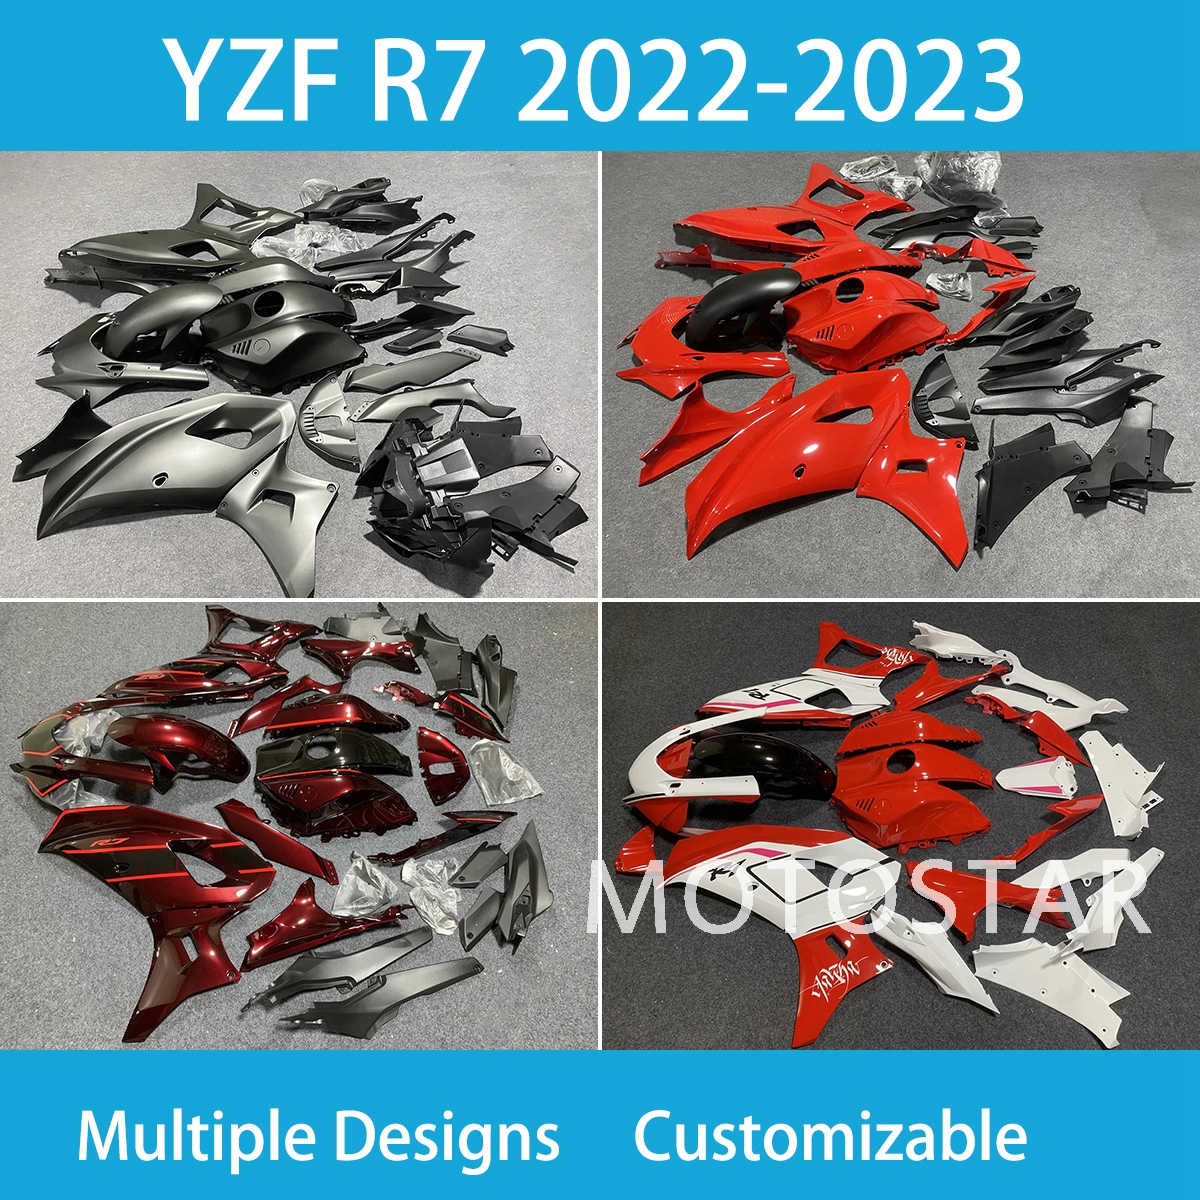 Free personalizado YZFR7 2022 2023 Feita de ano para Yamaha YZF R7 22 23 anos Injeção Motorcicleta de capota moldada para carnuda inteira Conjunto ano